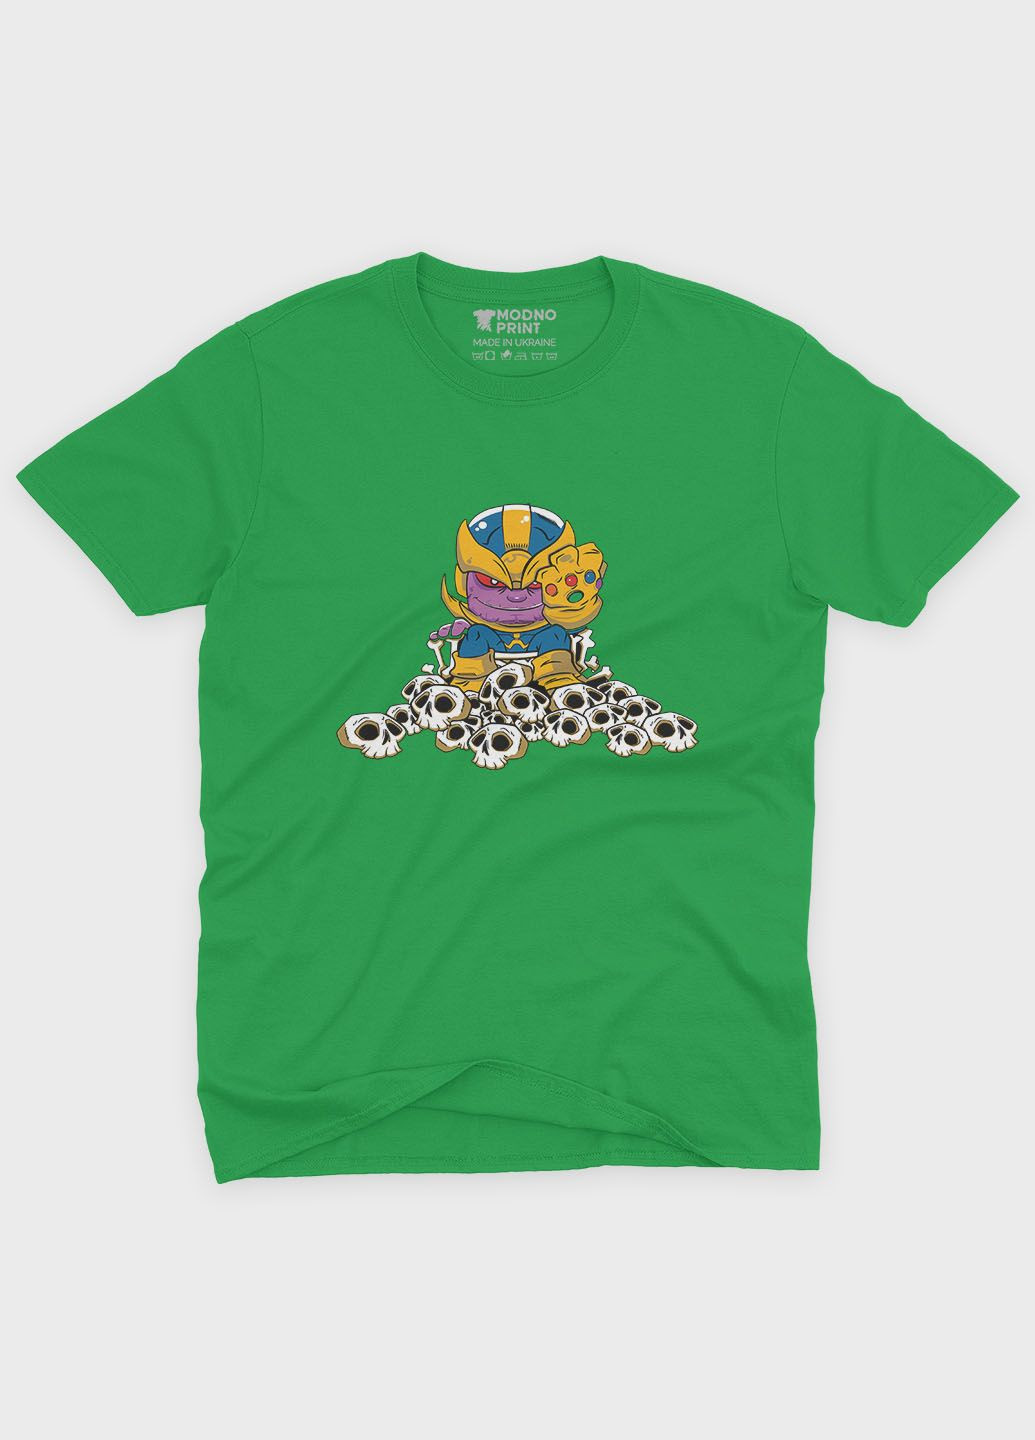 Зелена демісезонна футболка для хлопчика з принтом супезлодія - танос (ts001-1-keg-006-019-004-b) Modno